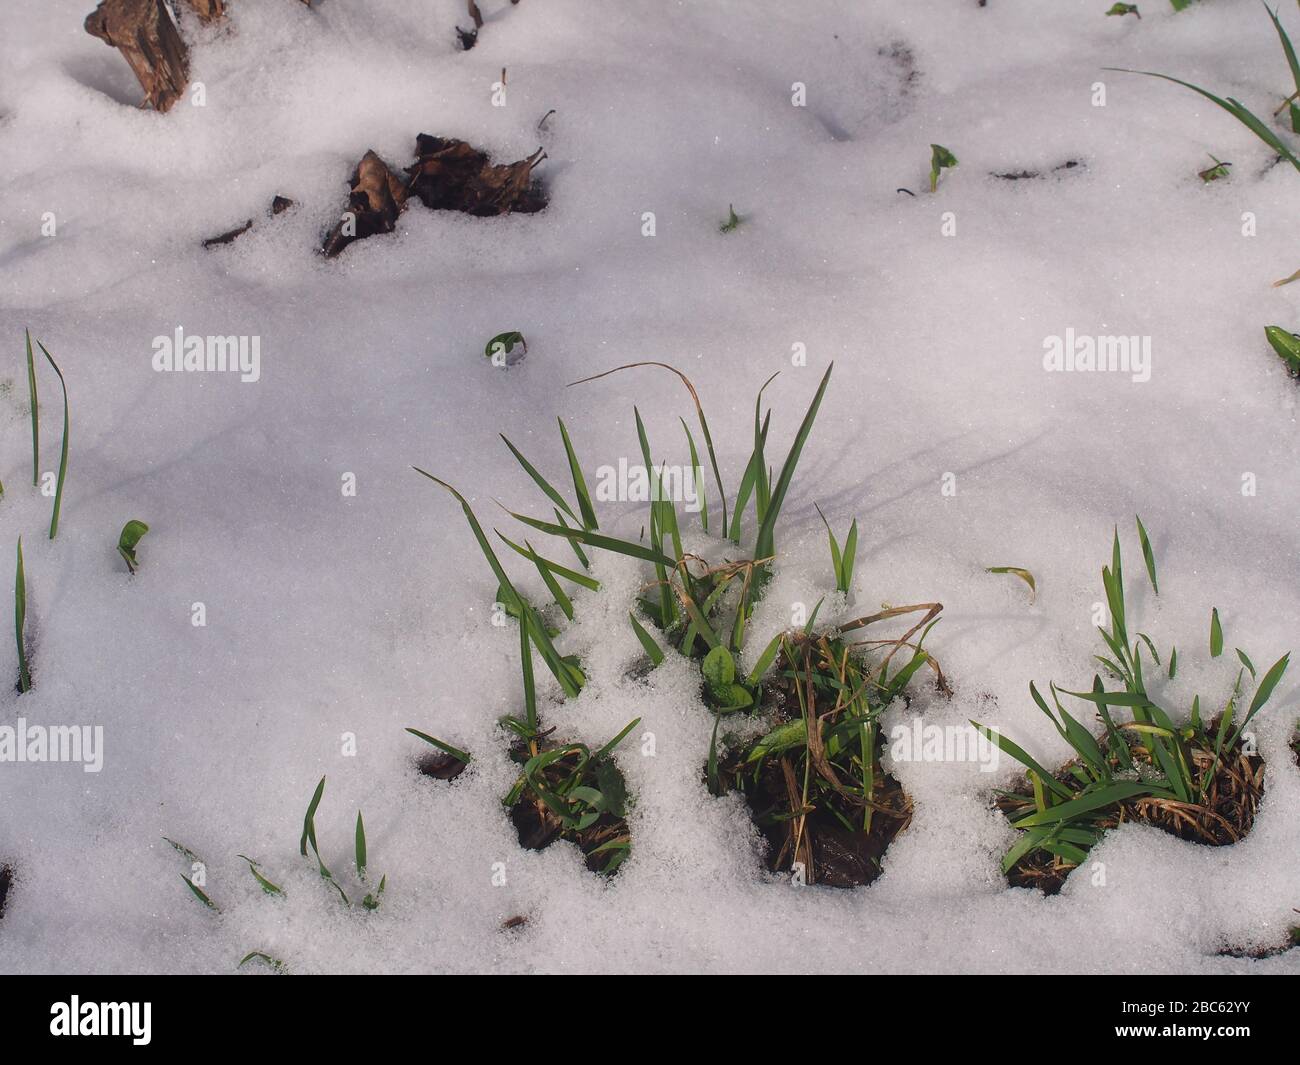 L'herbe verte se brise dans la neige. Après la chute de neige. Pression soudaine à froid. Nature. Banque D'Images